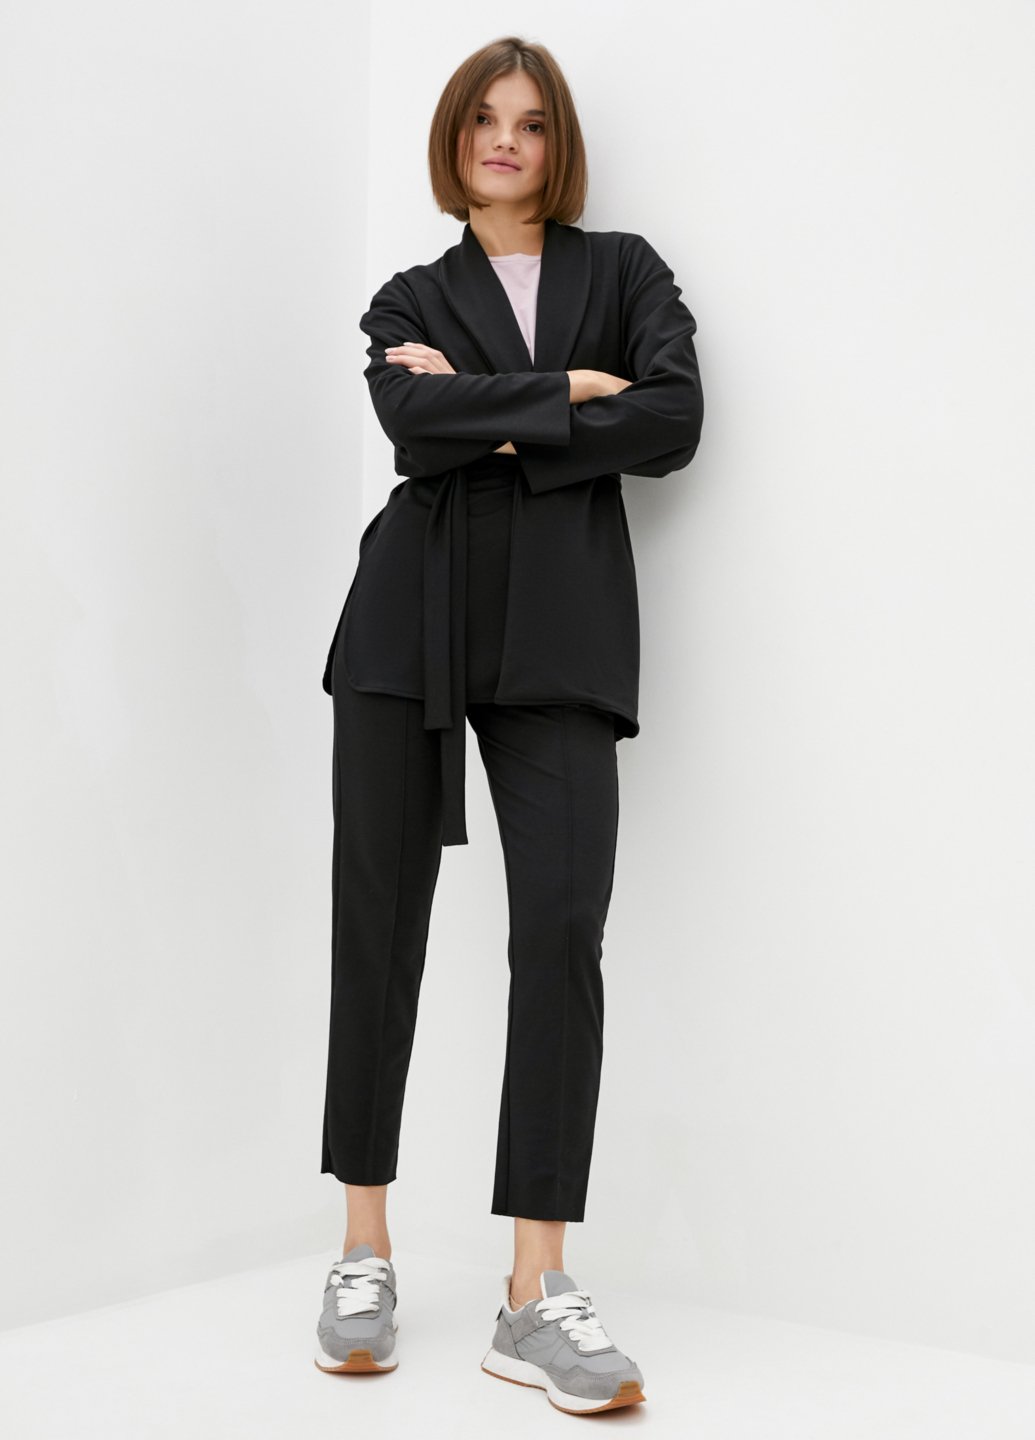 Купить Классический костюм женский черного цвета Merlini Йоркшир 100000054, размер 42-44 в интернет-магазине